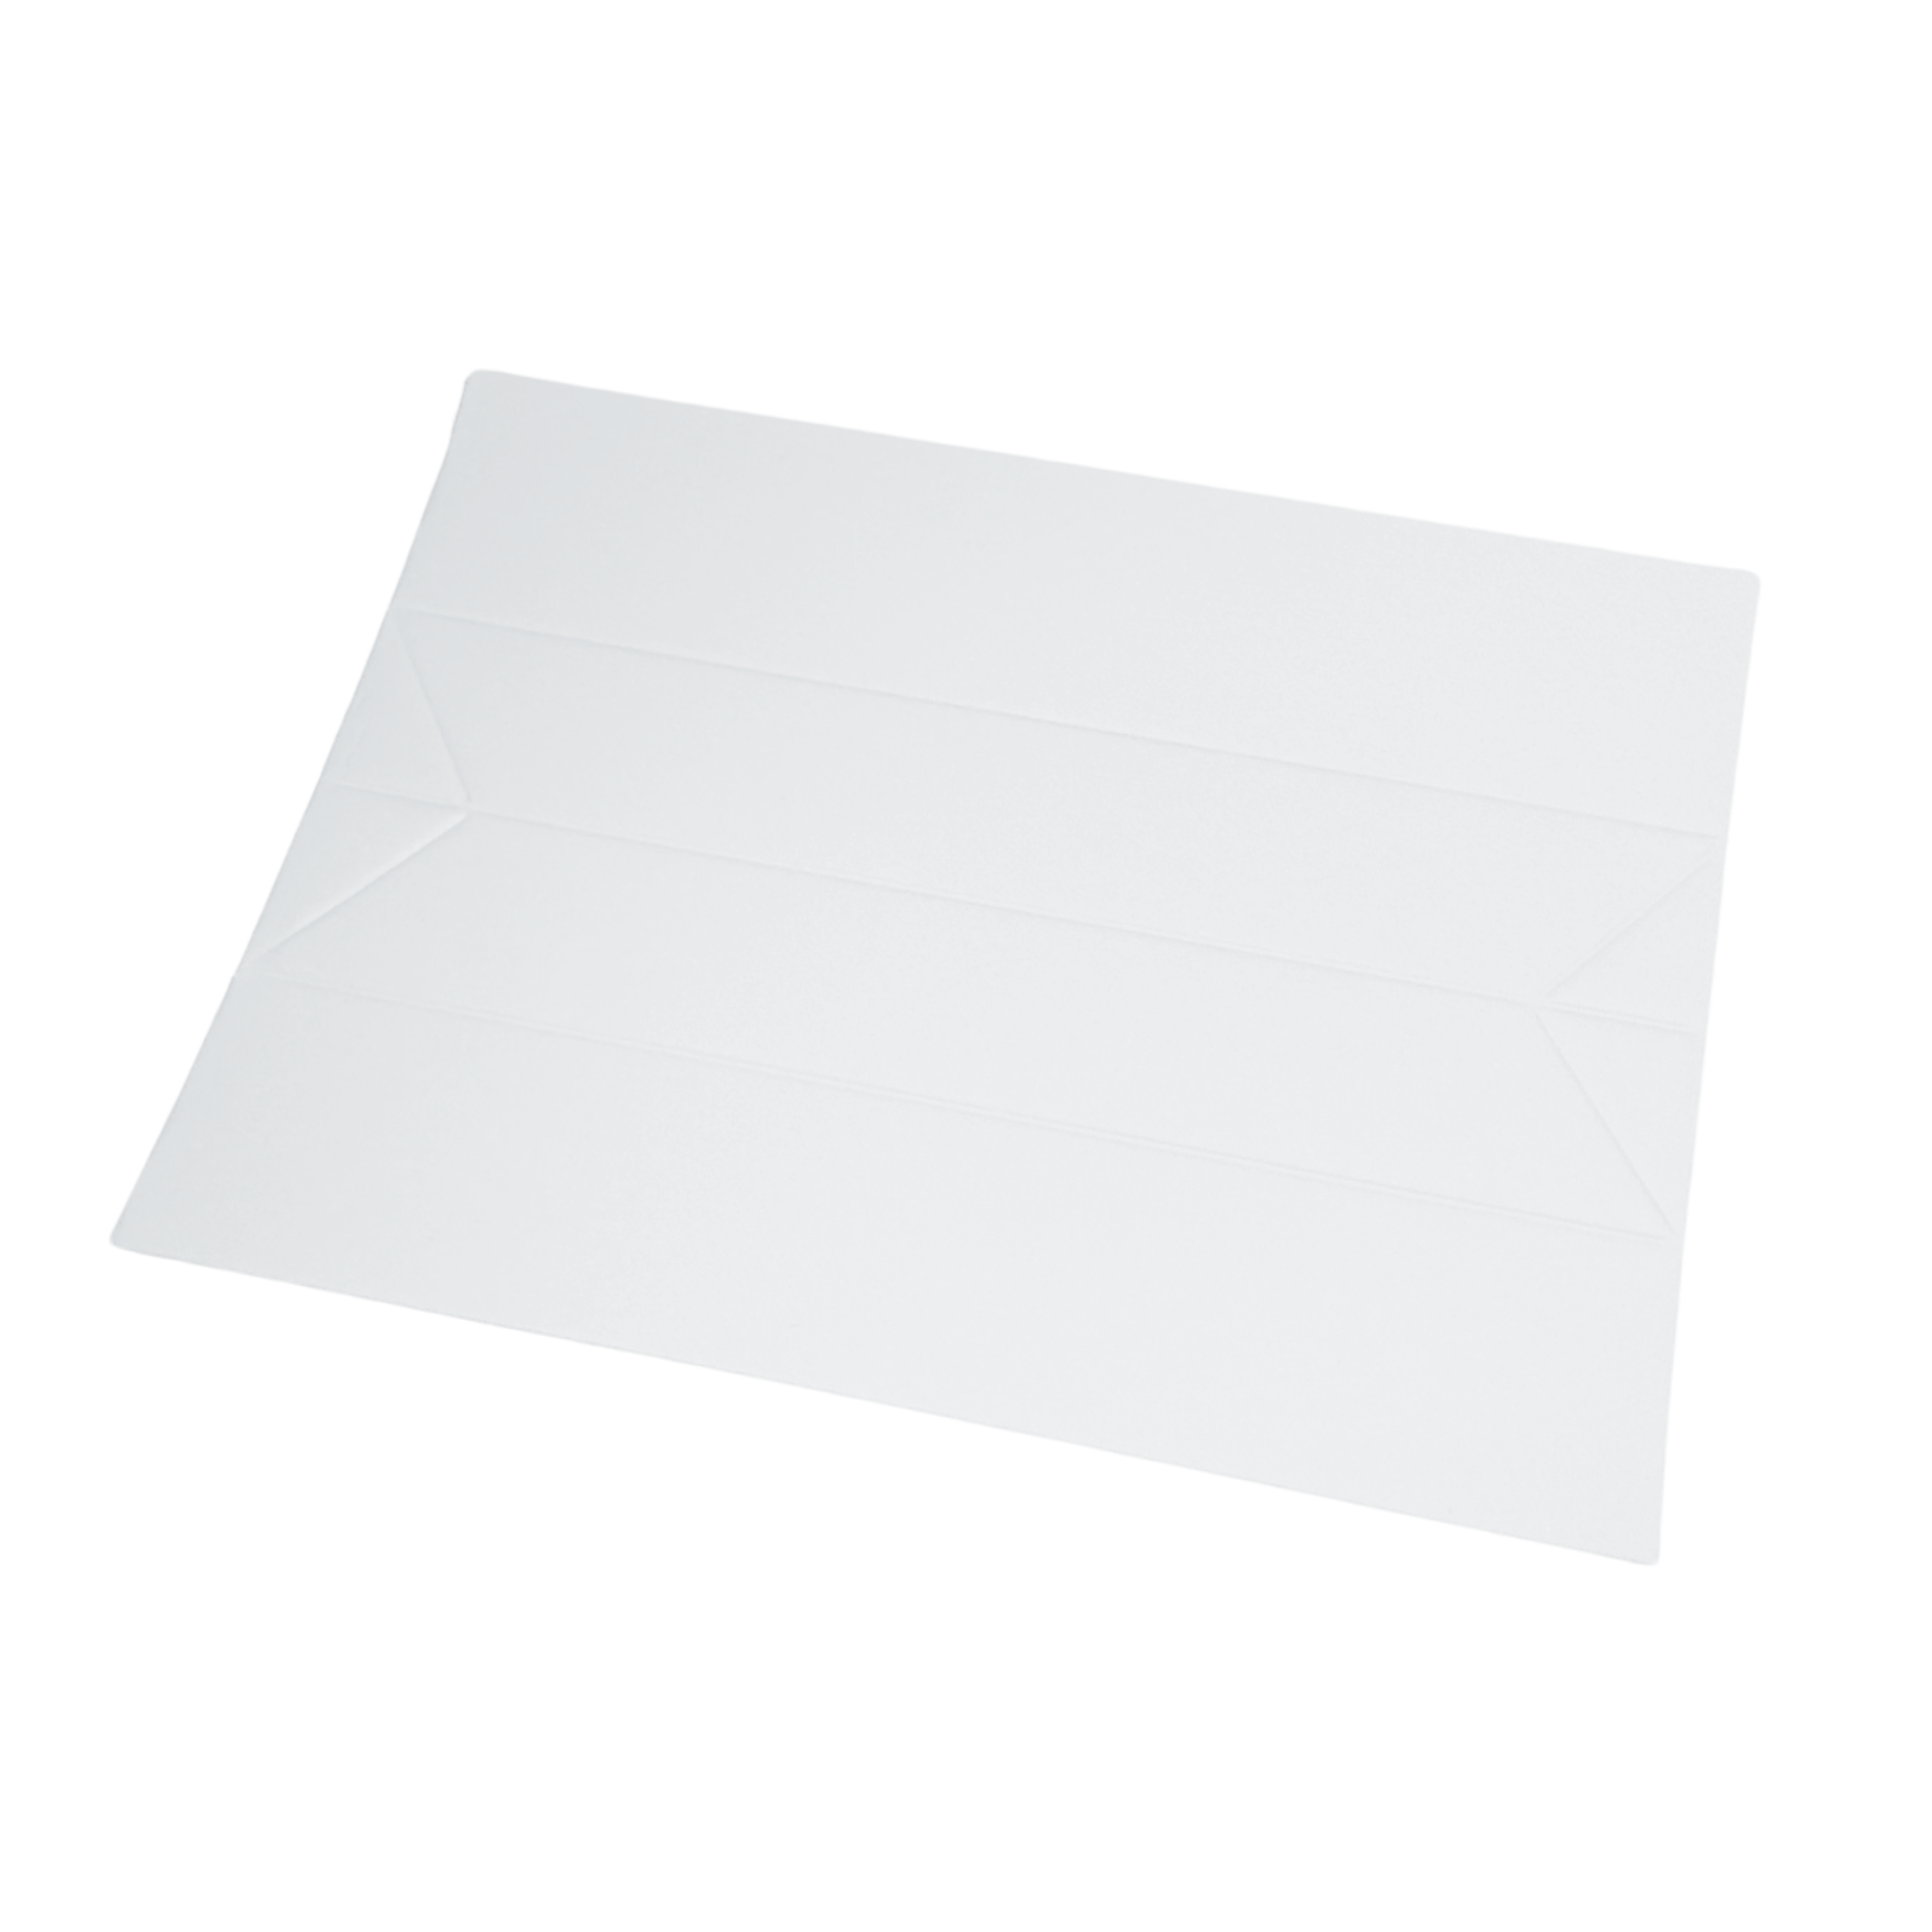 Πτυσσόμενο χαρτί για την αξιολόγηση του χρώματος λευκών διαμαντιών (10 τεμάχια)